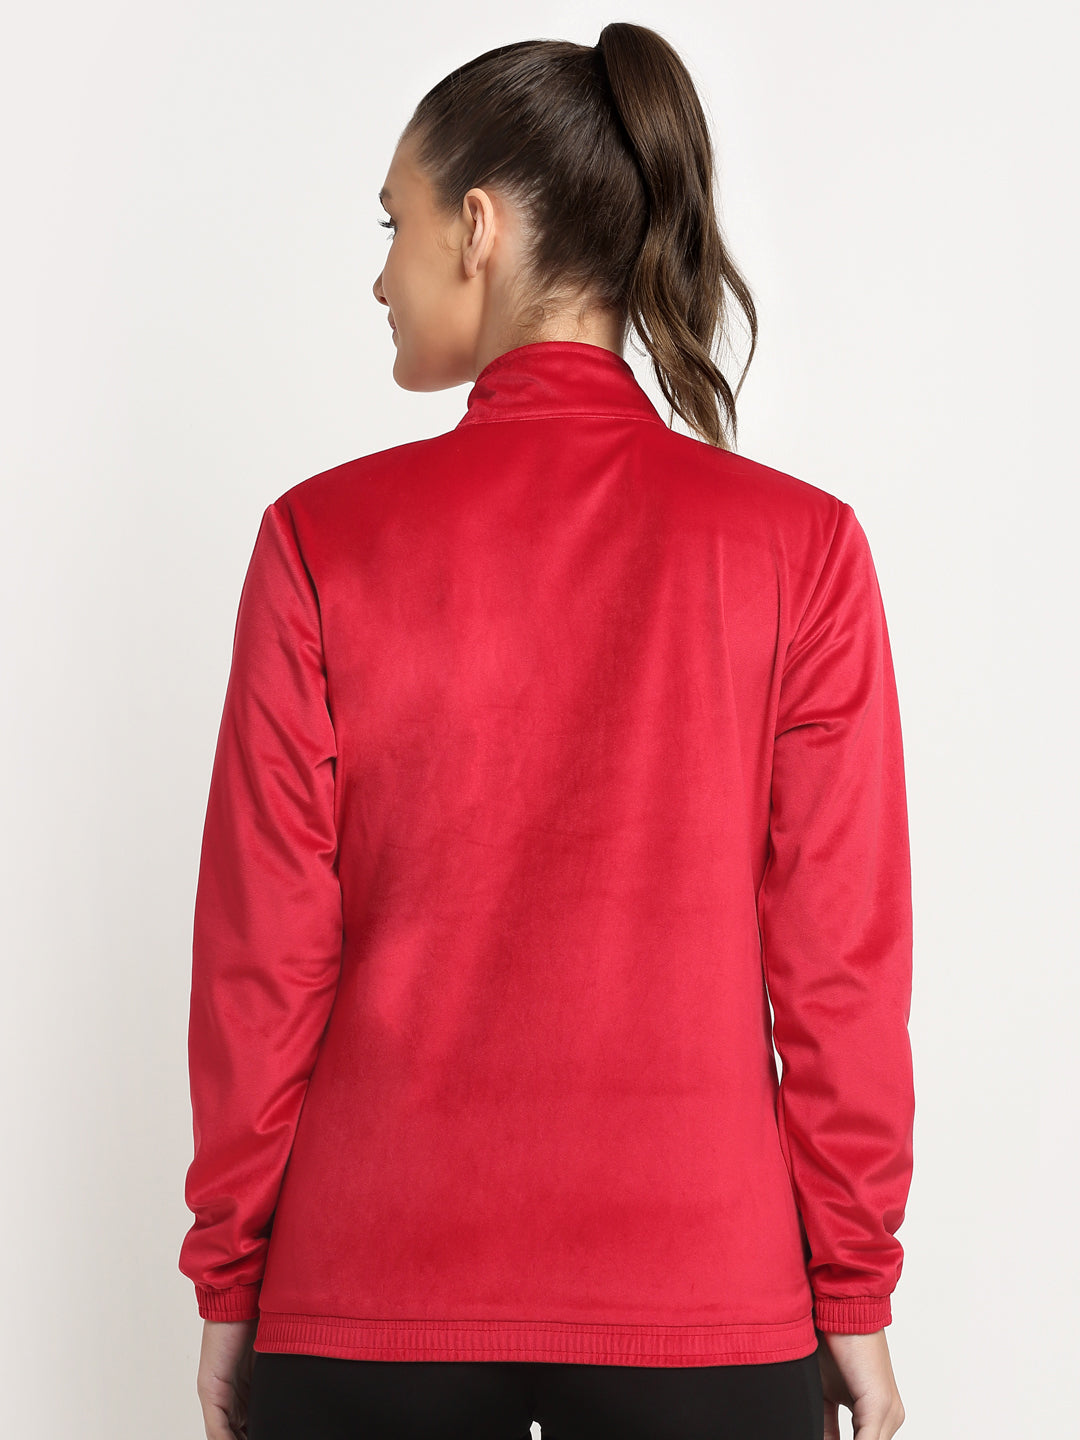 Invincible Women's Velour Full Zip Jacket